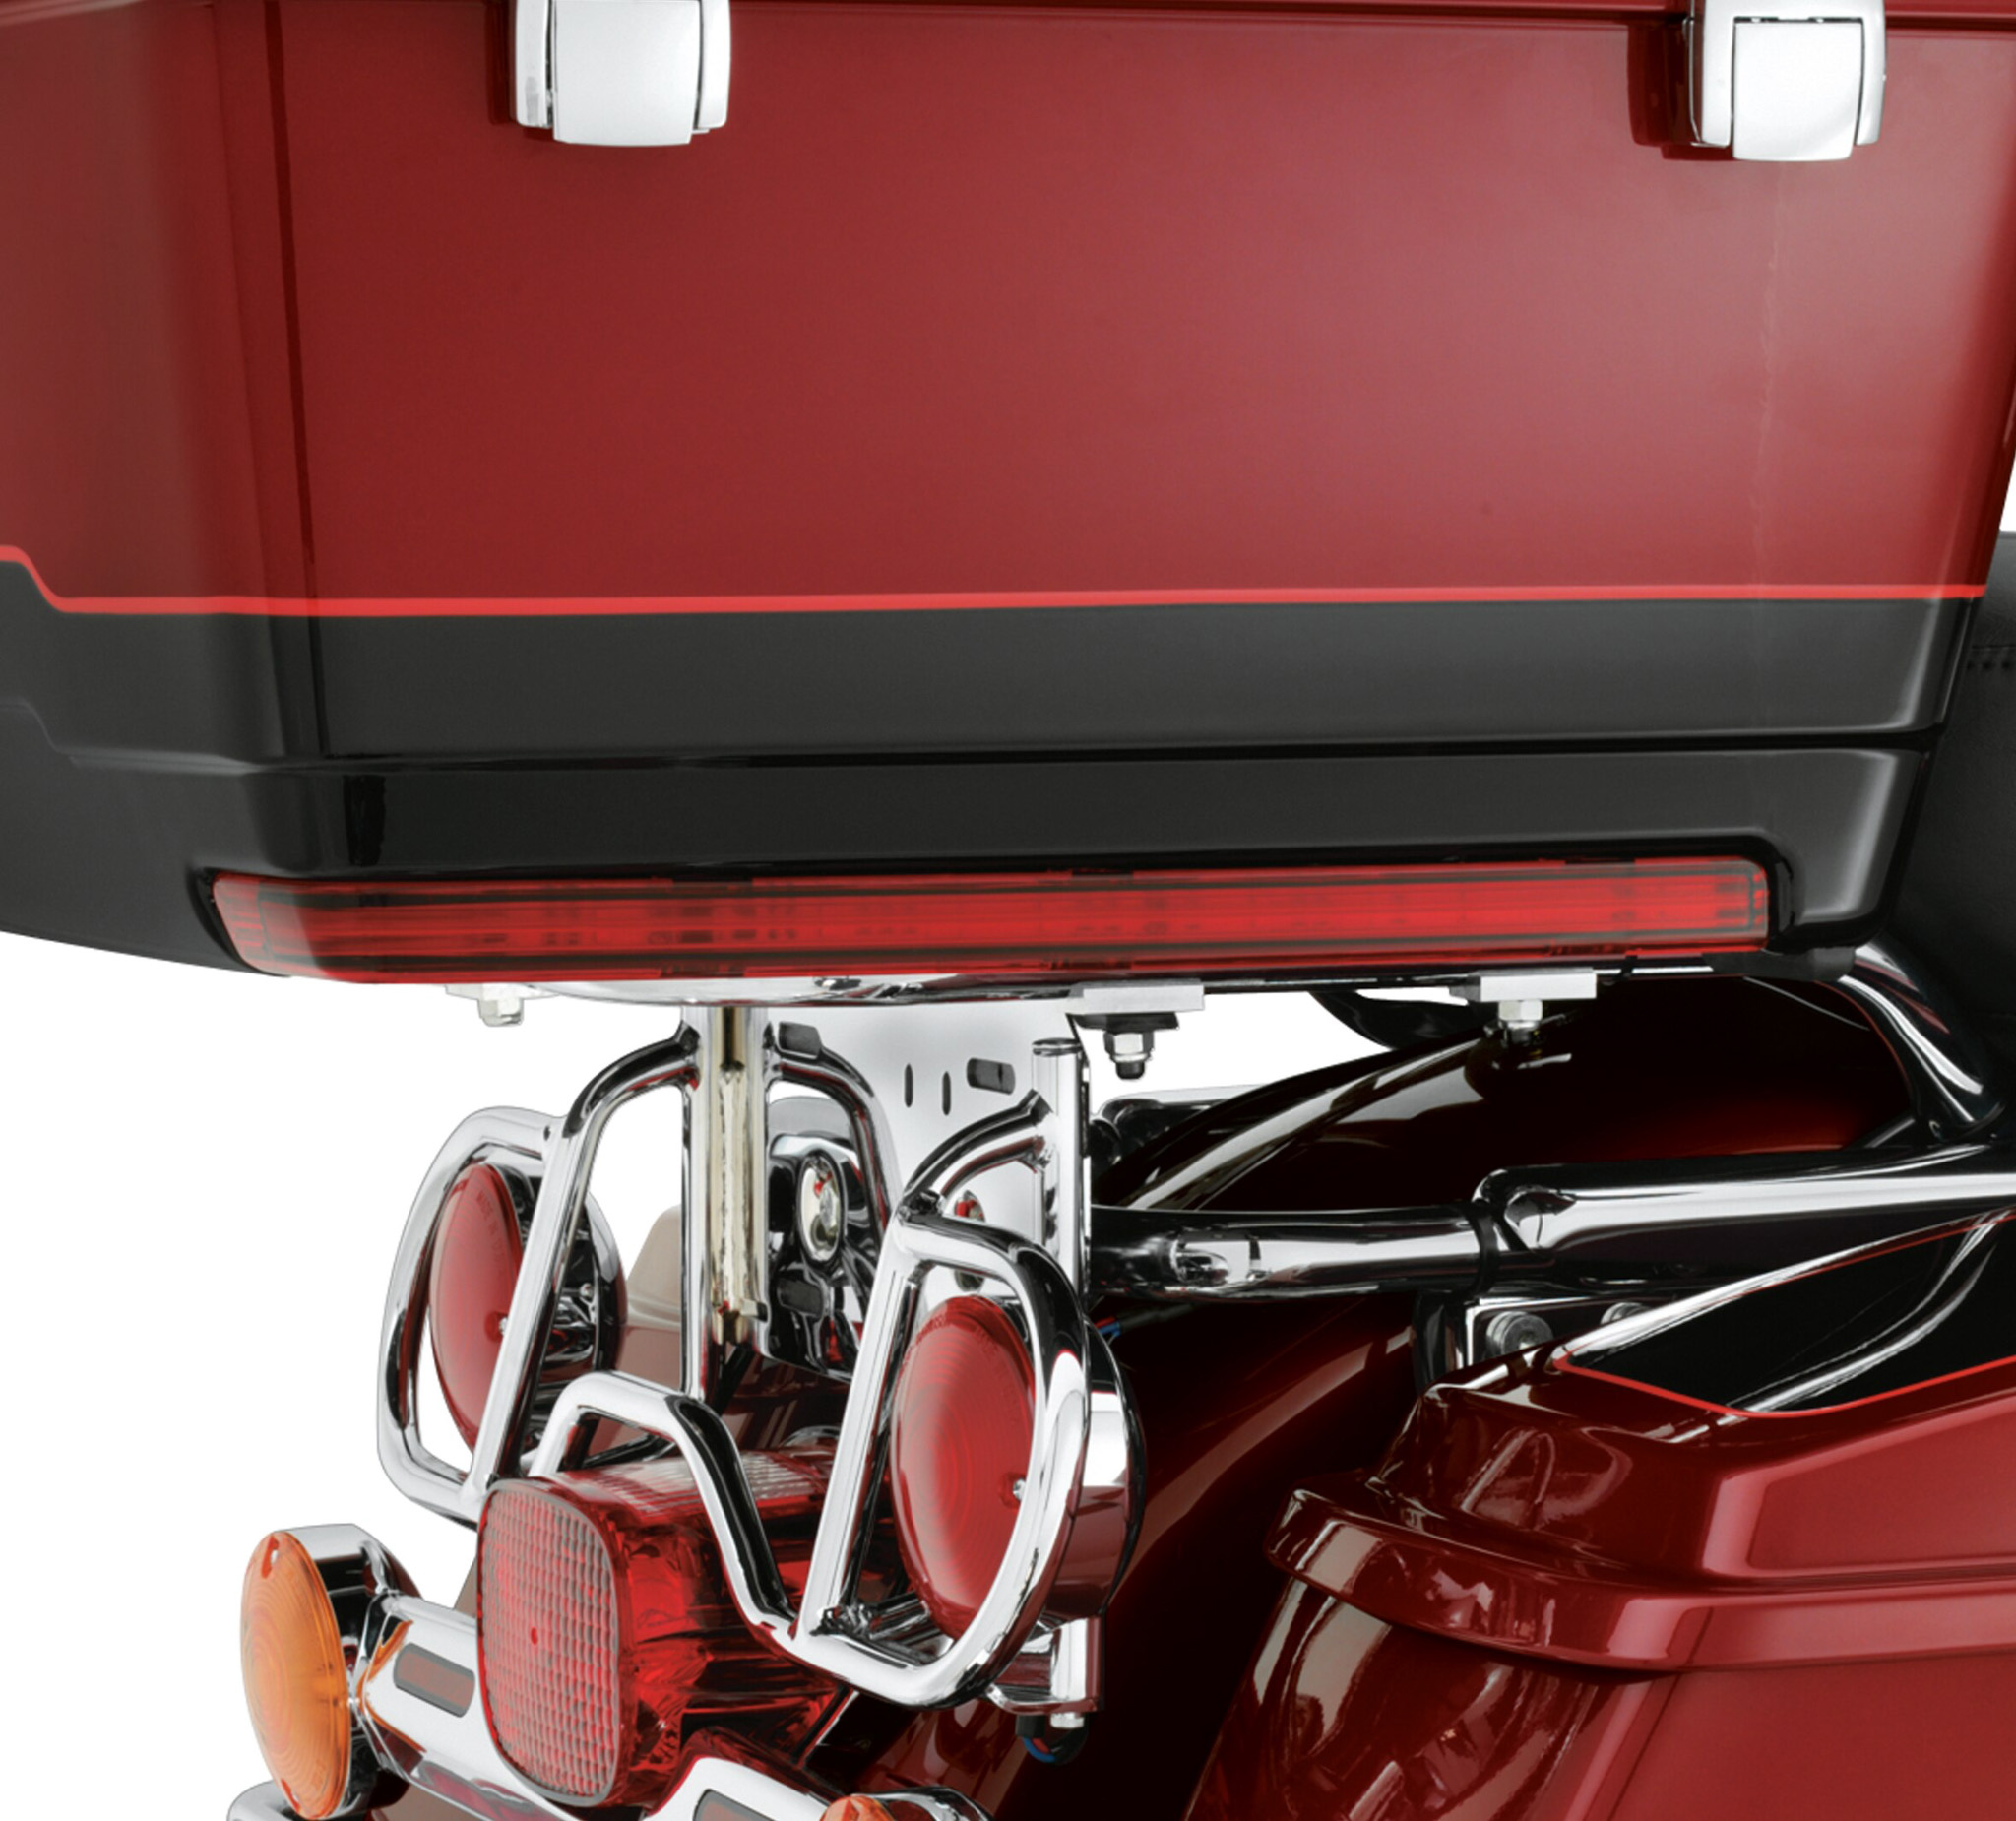 TCMT Tour Pack Accent Side Marker LED Light Fits For Harley Road King Glide 2006-2020 Red color lens 